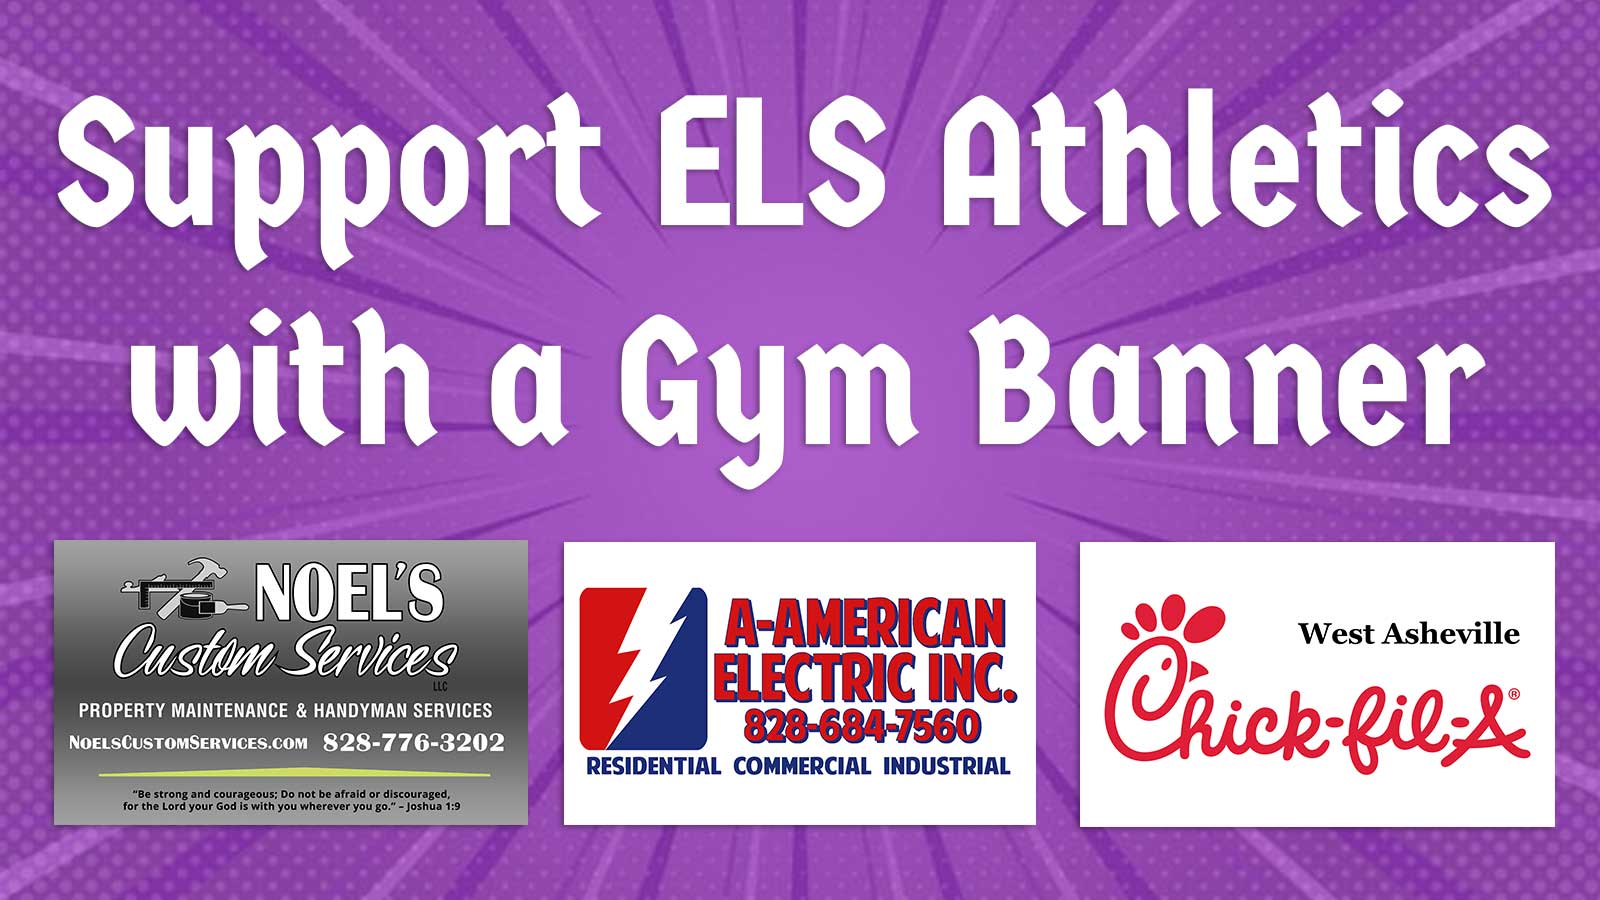 Support ELS Athletics